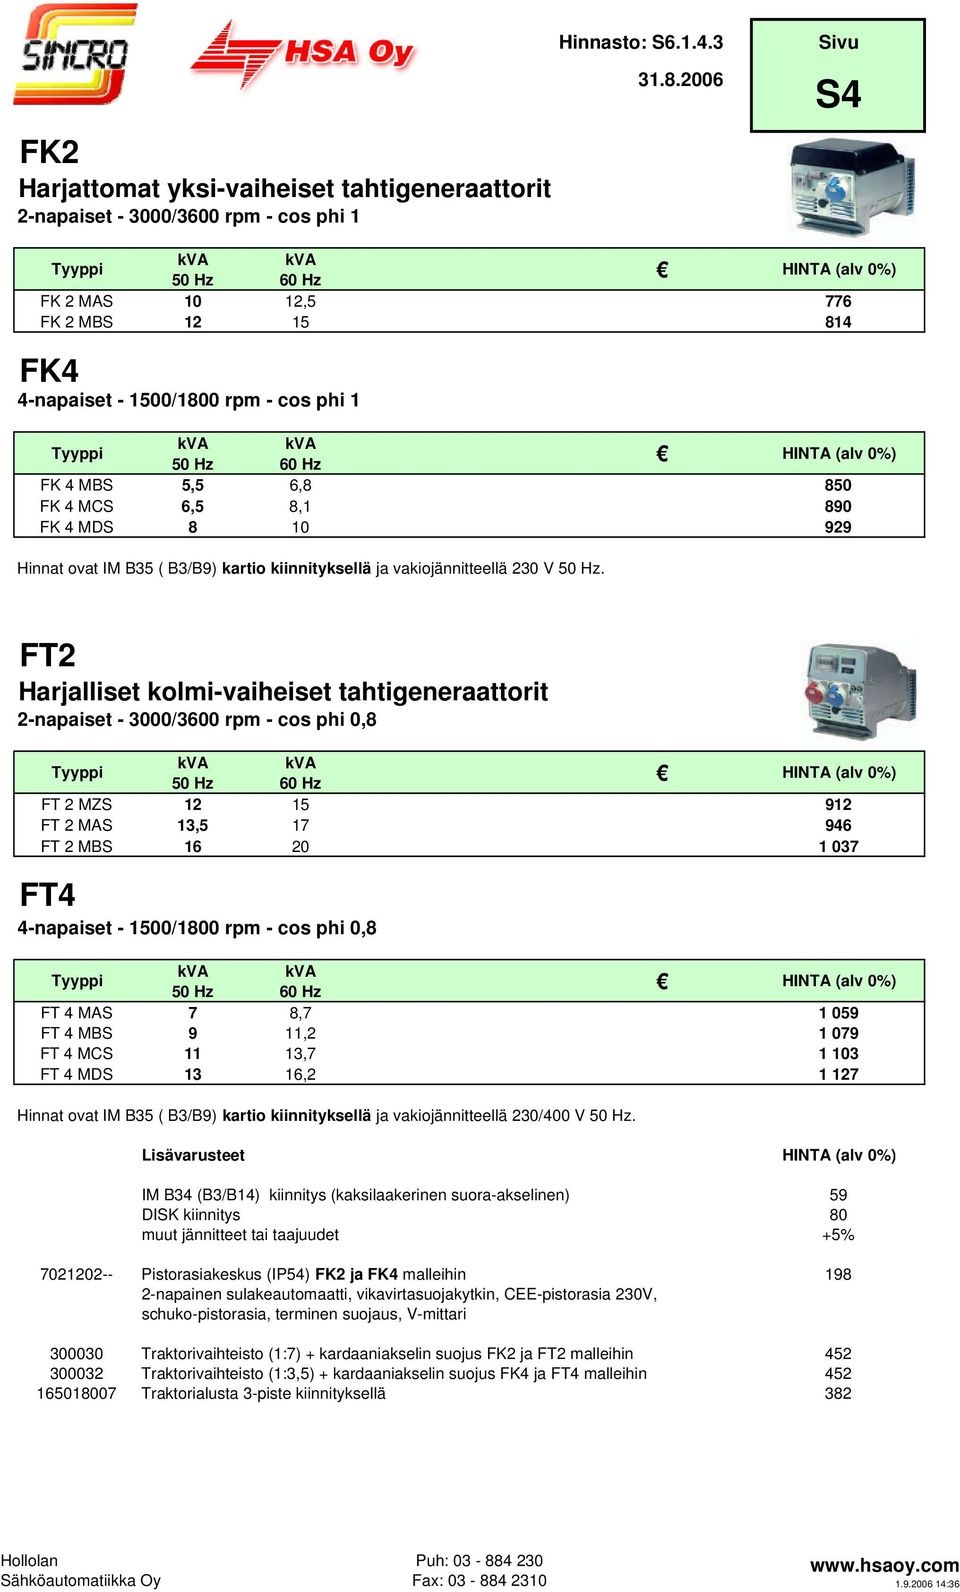 FT2 Harjalliset kolmi-vaiheiset tahtigeneraattorit 2-napaiset - 3000/3600 rpm - cos phi 0,8 FT 2 MZS 12 15 912 FT 2 MAS 13,5 17 946 FT 2 MBS 16 20 1 037 FT4 4-napaiset - 1500/1800 rpm - cos phi 0,8